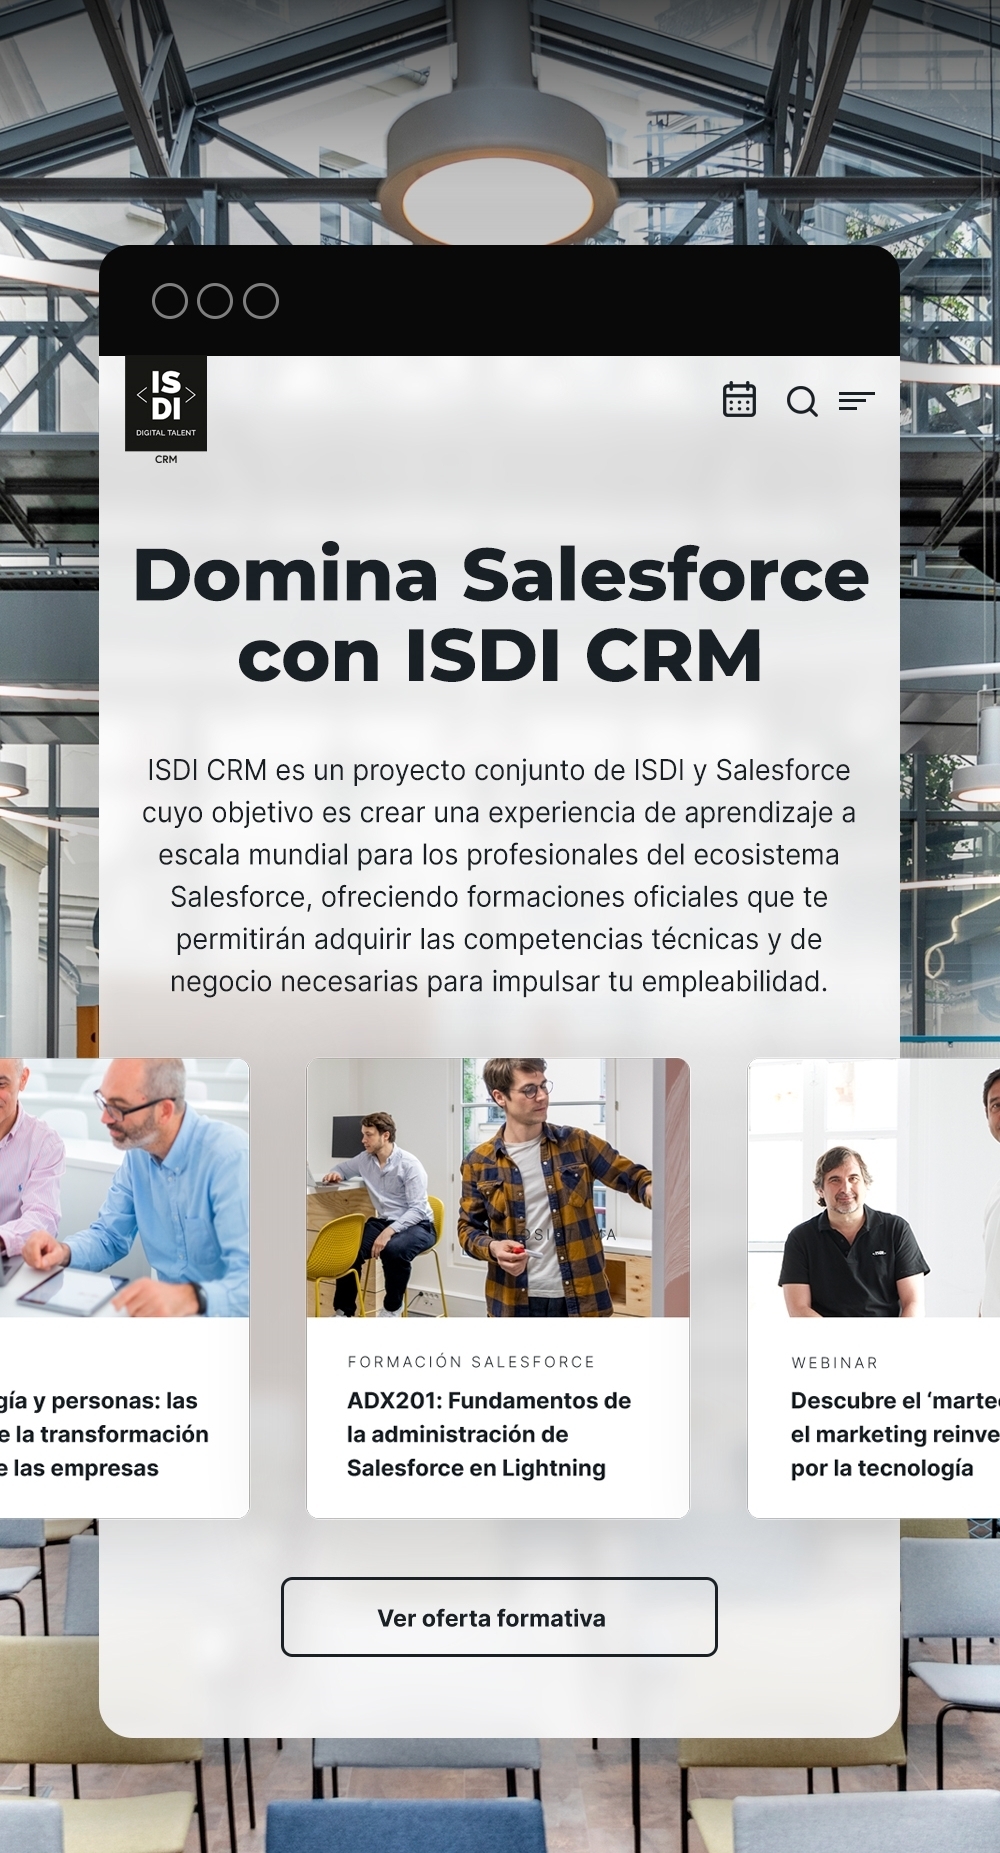 ISDI CRM es una empresa especializada en la formación en Salesforce, uno de los CRM más populares del mundo.